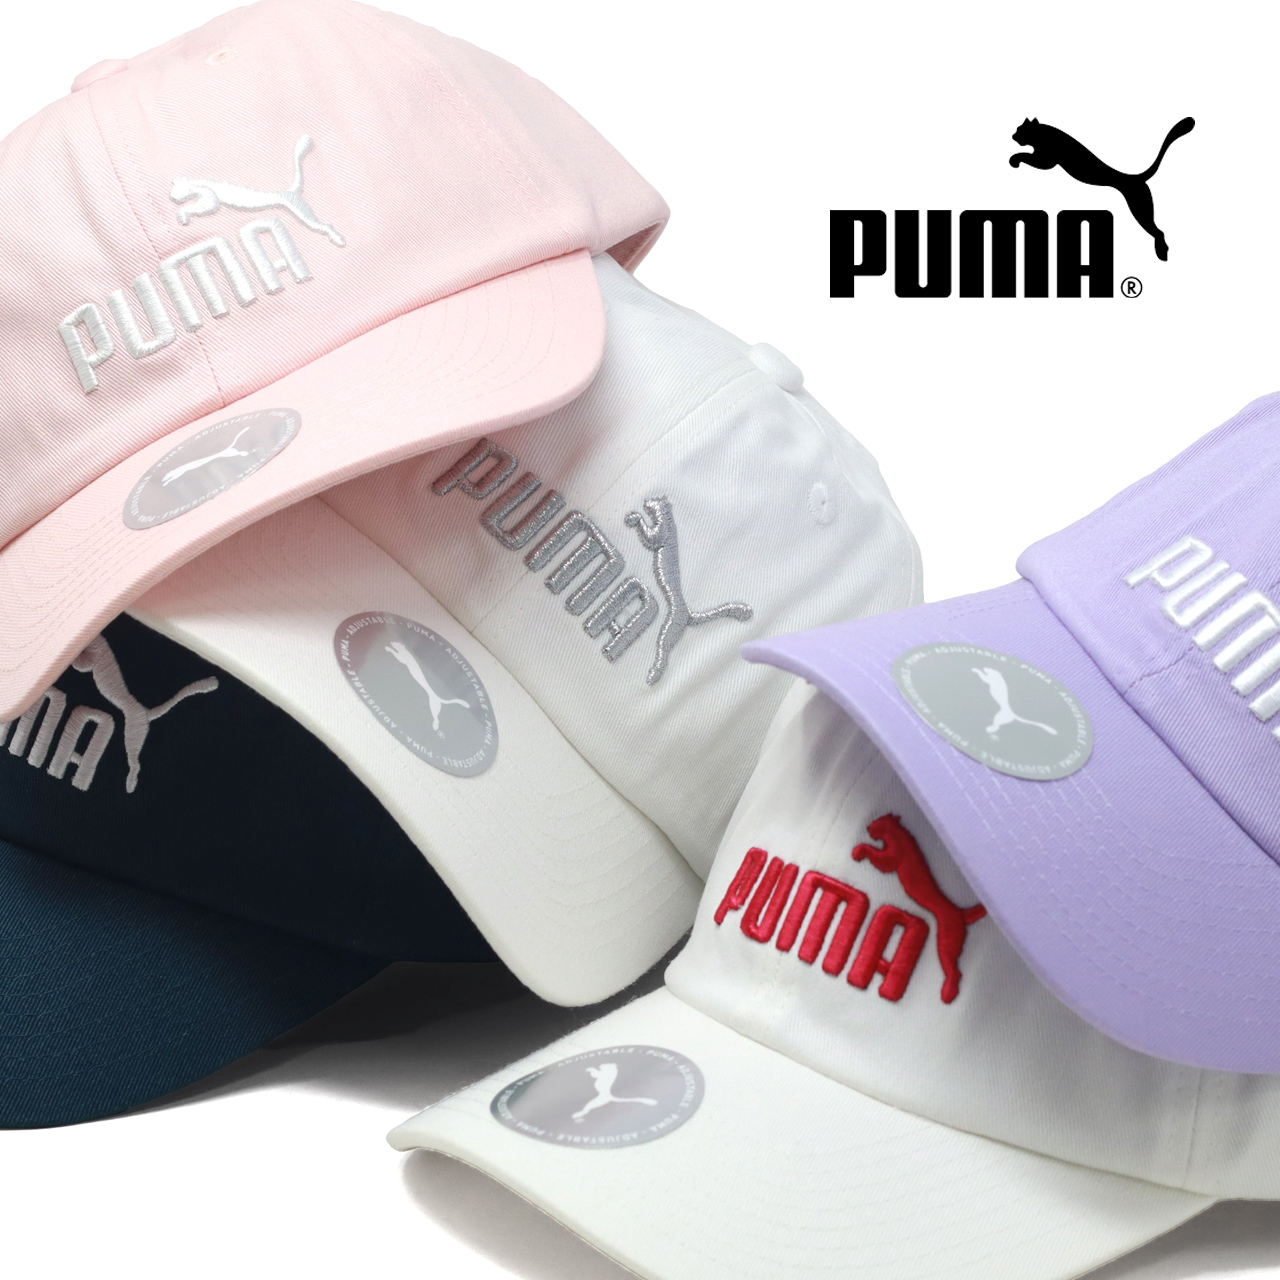 ベースボールキャップ PUMA 3D刺繍 スポーツ 帽子 コットン100 日よけ 暑さ対策 プーマ ...